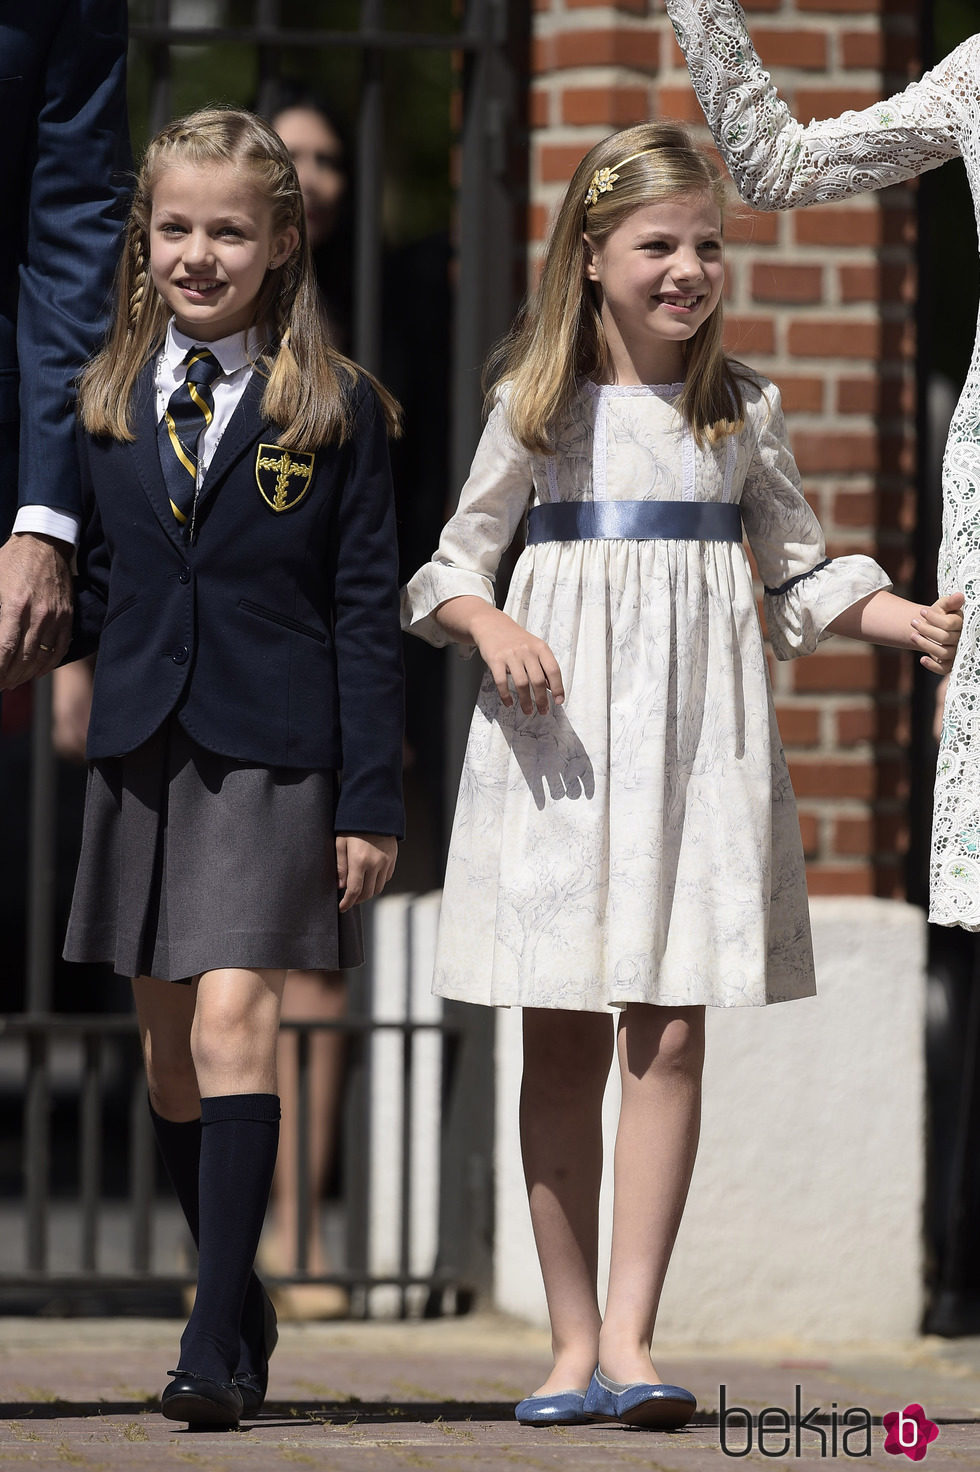 La Princesa Leonor, uniformada en su Primera Comunión, y la Infanta Sofía, vestida de Nanos